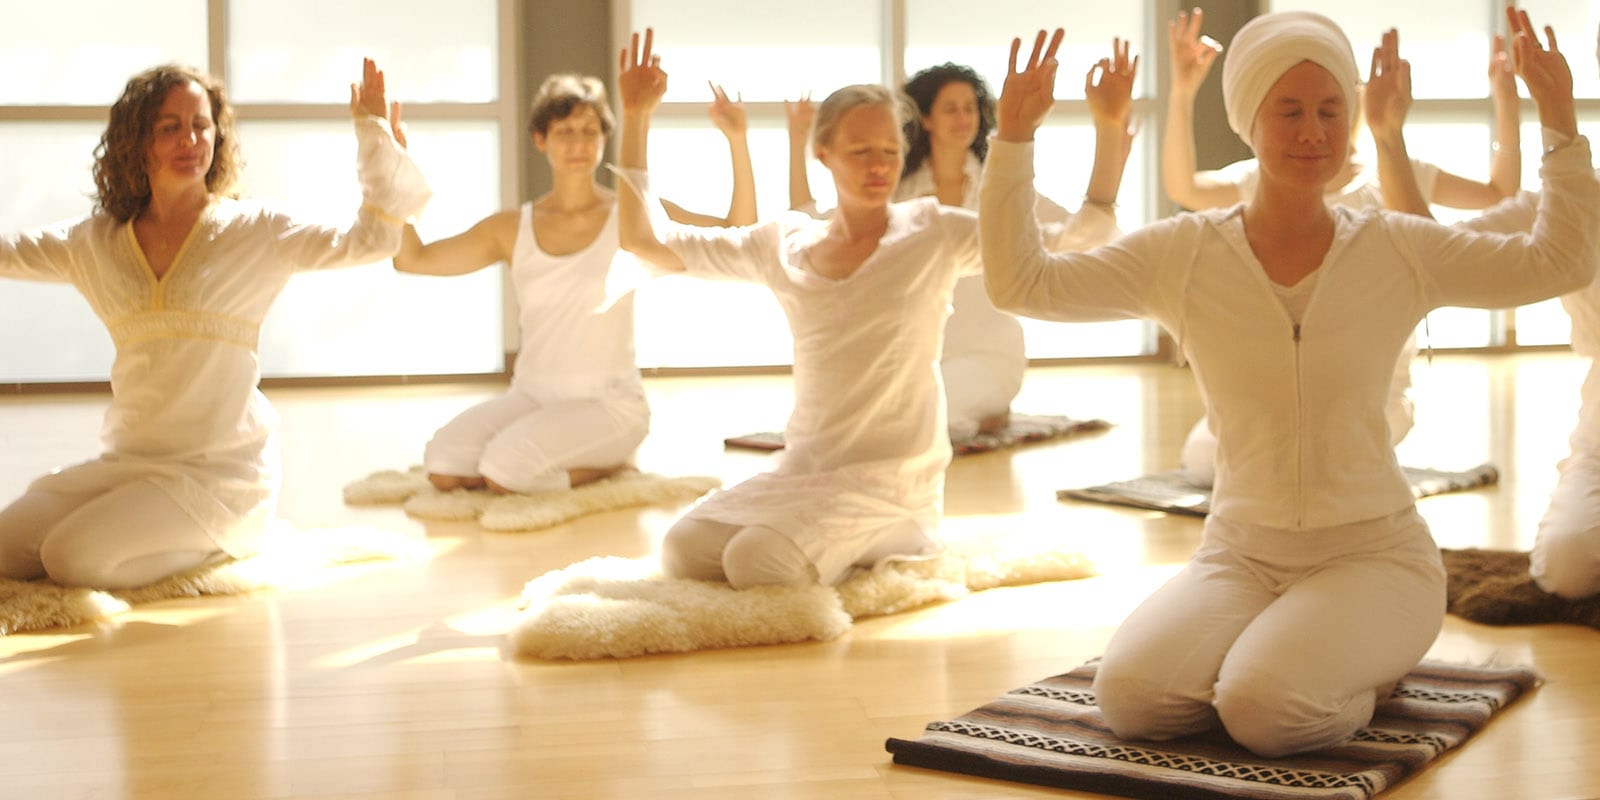 300 hour kundalini yoga teacher training course trainees